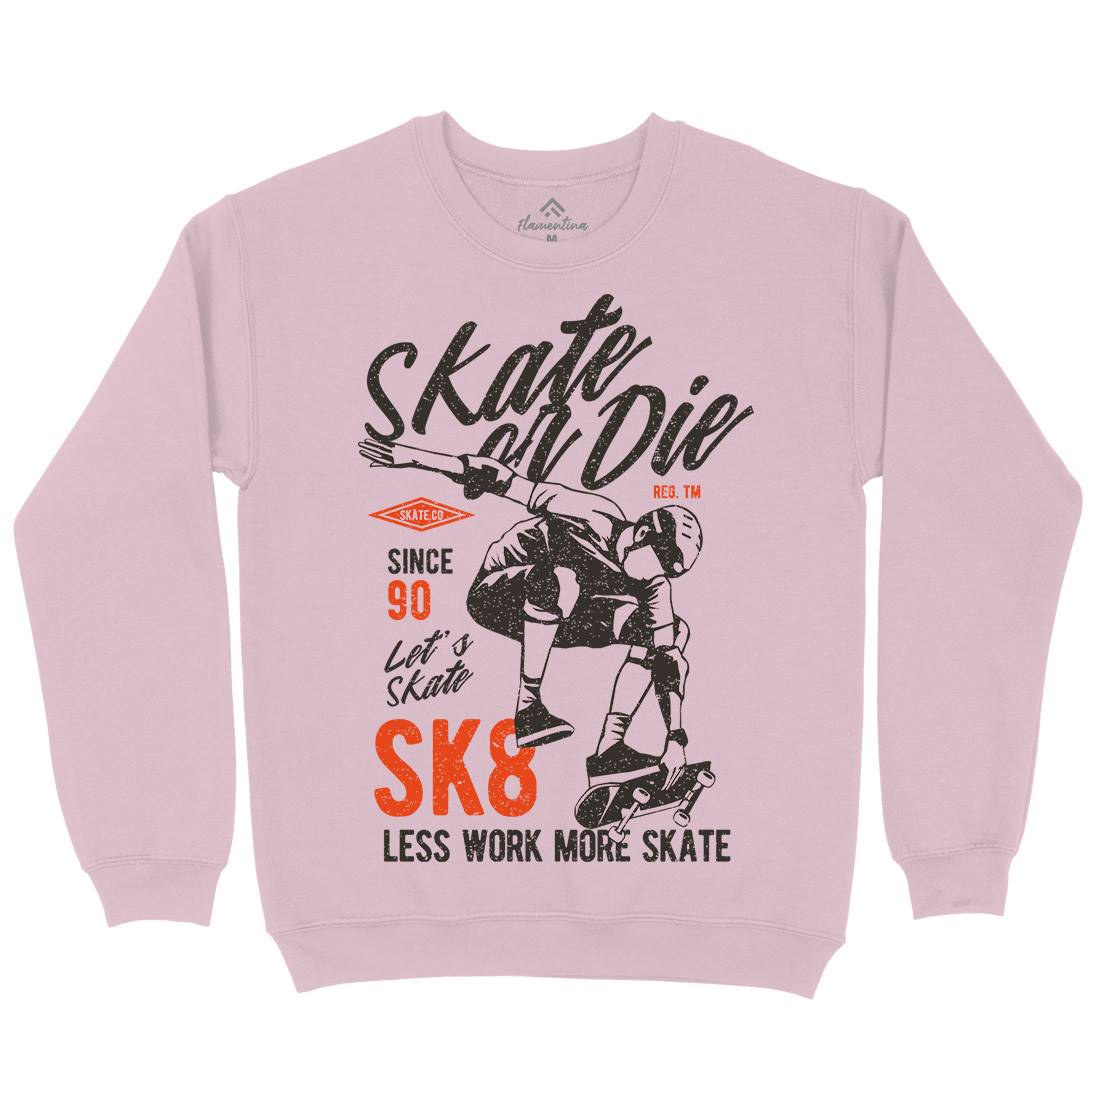 Or Die Kids Crew Neck Sweatshirt Skate A754